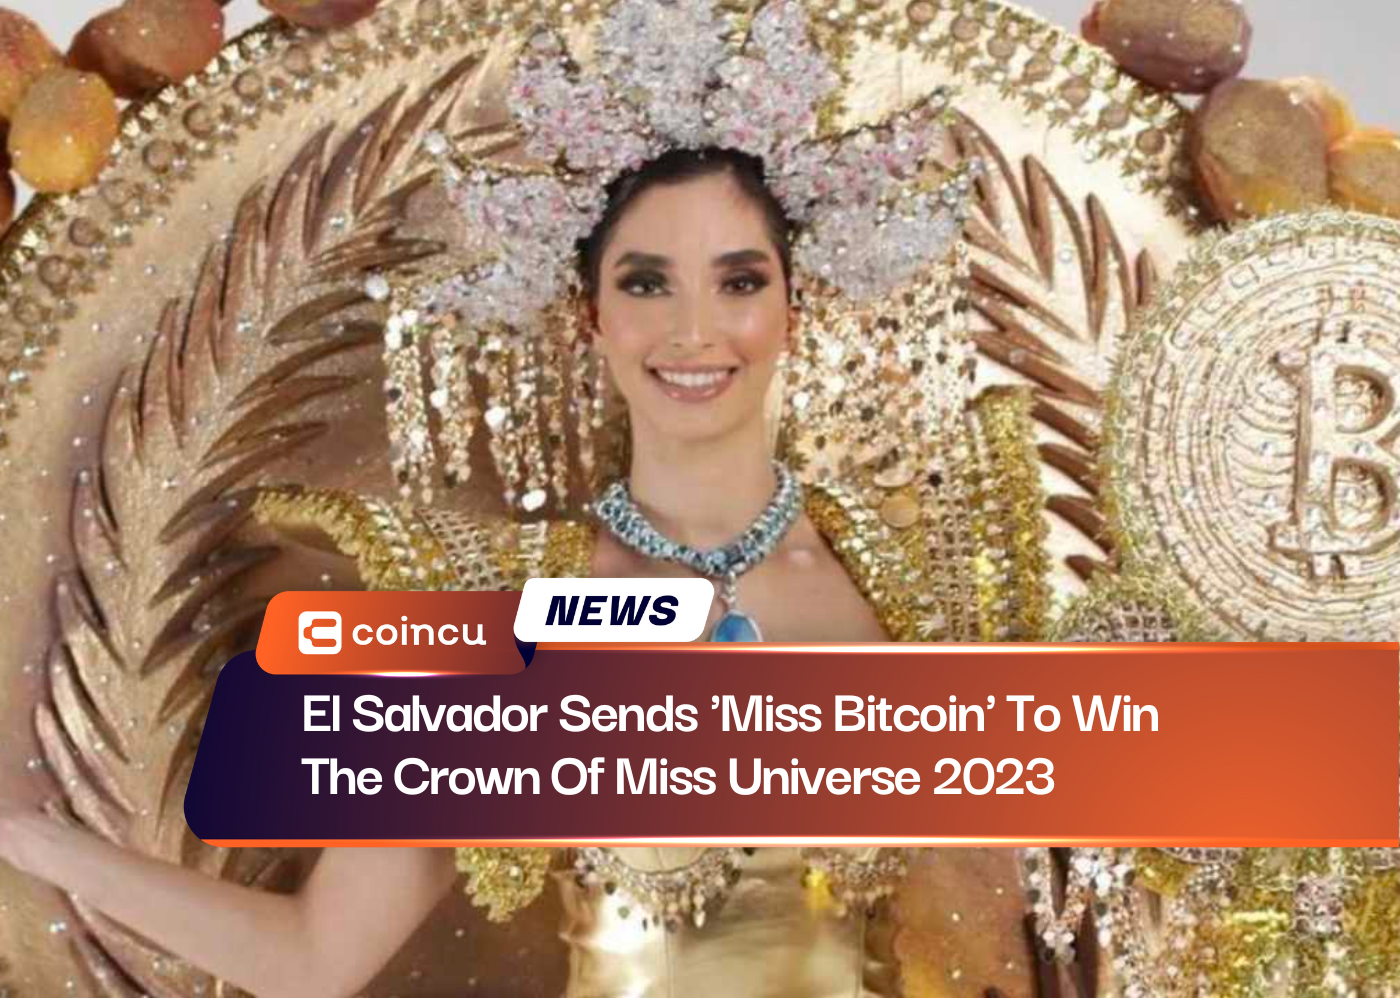 El Salvador, Miss Universe 2023 Tacını Kazanmak İçin 'Miss Bitcoin'i Gönderdi